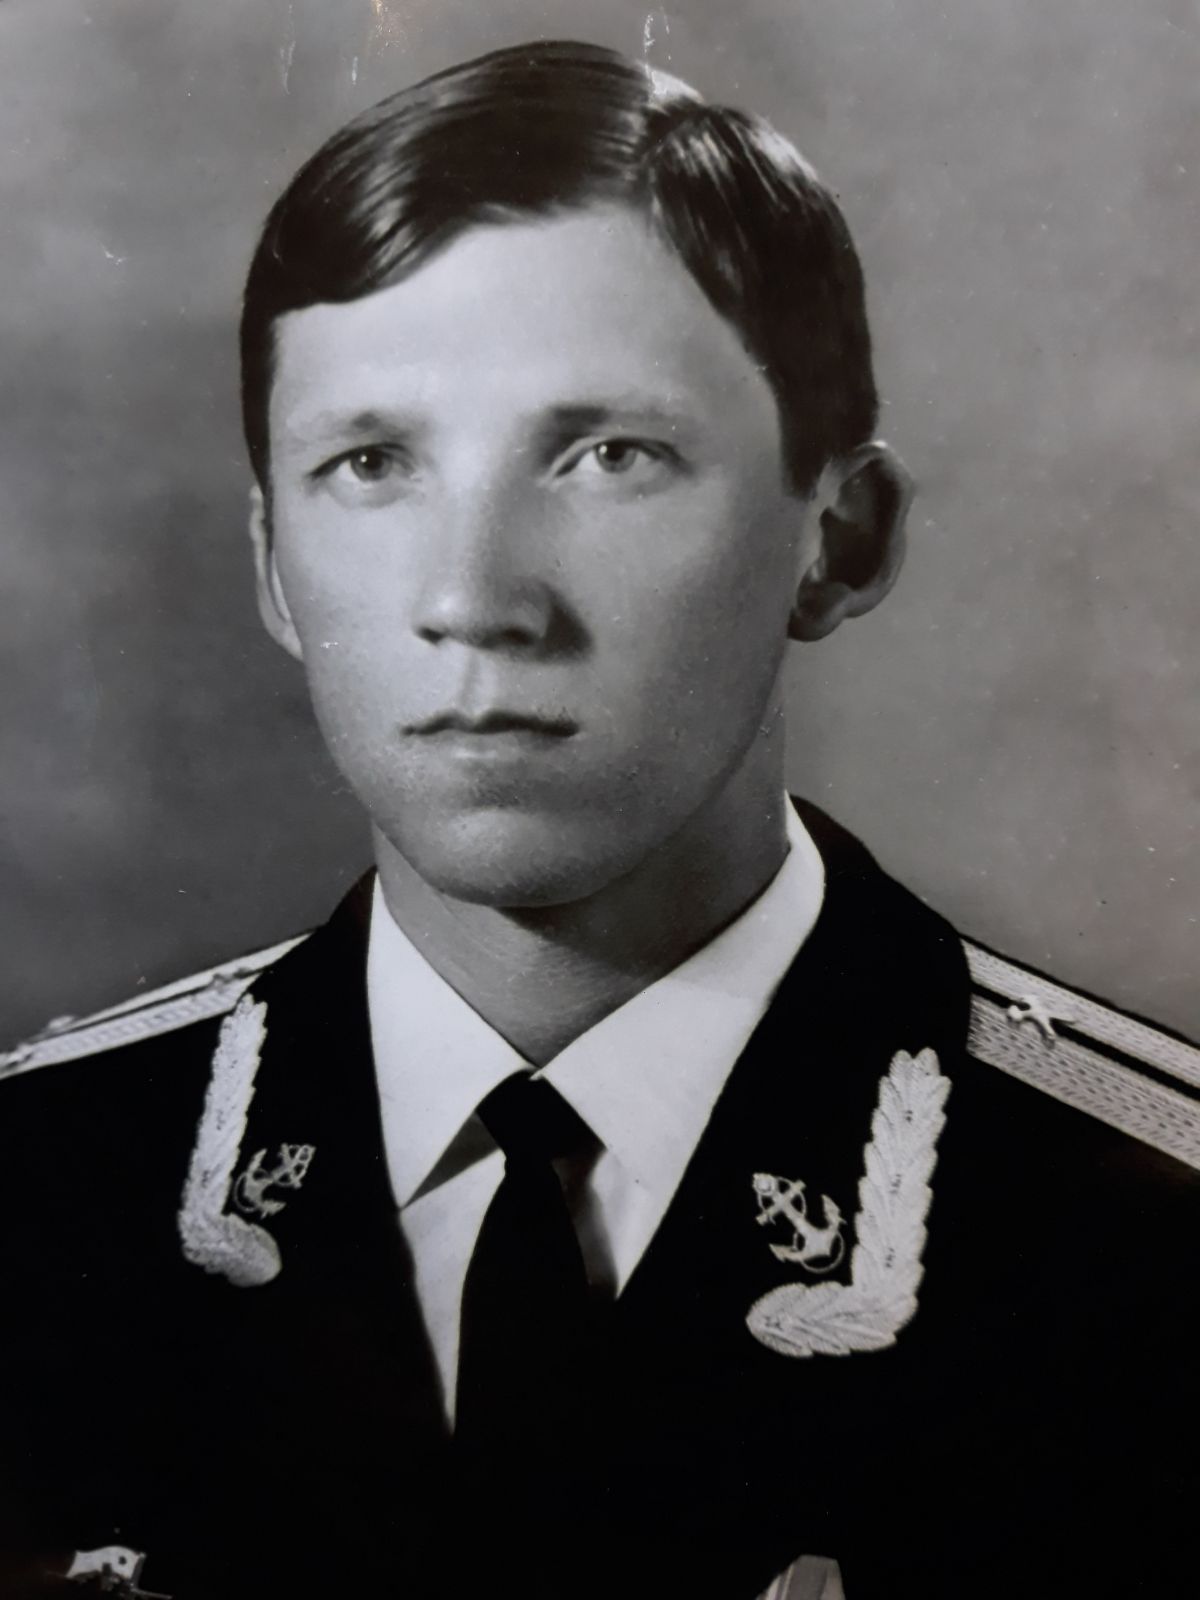 9 декабря состоится открытие мемориальной доски в честь Хрычикова Вячеслава Витальевича